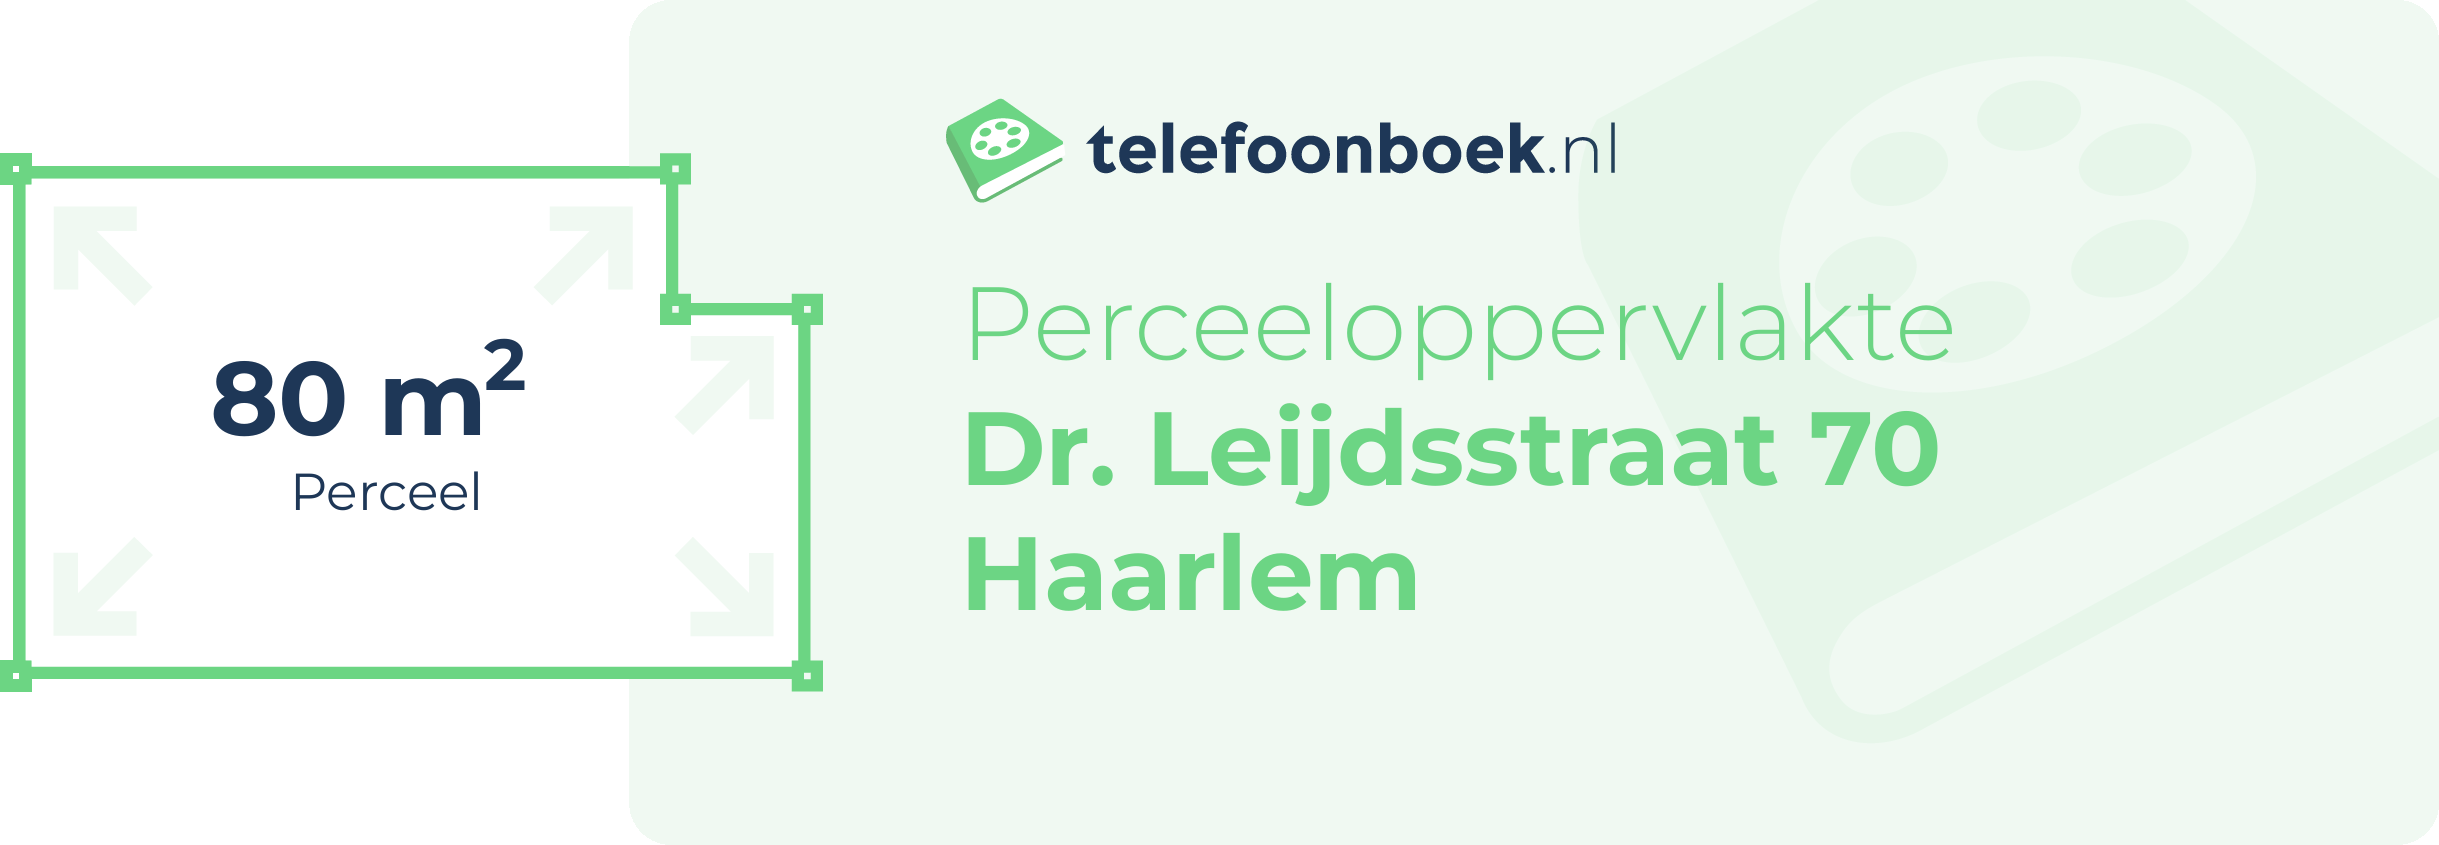 Perceeloppervlakte Dr. Leijdsstraat 70 Haarlem